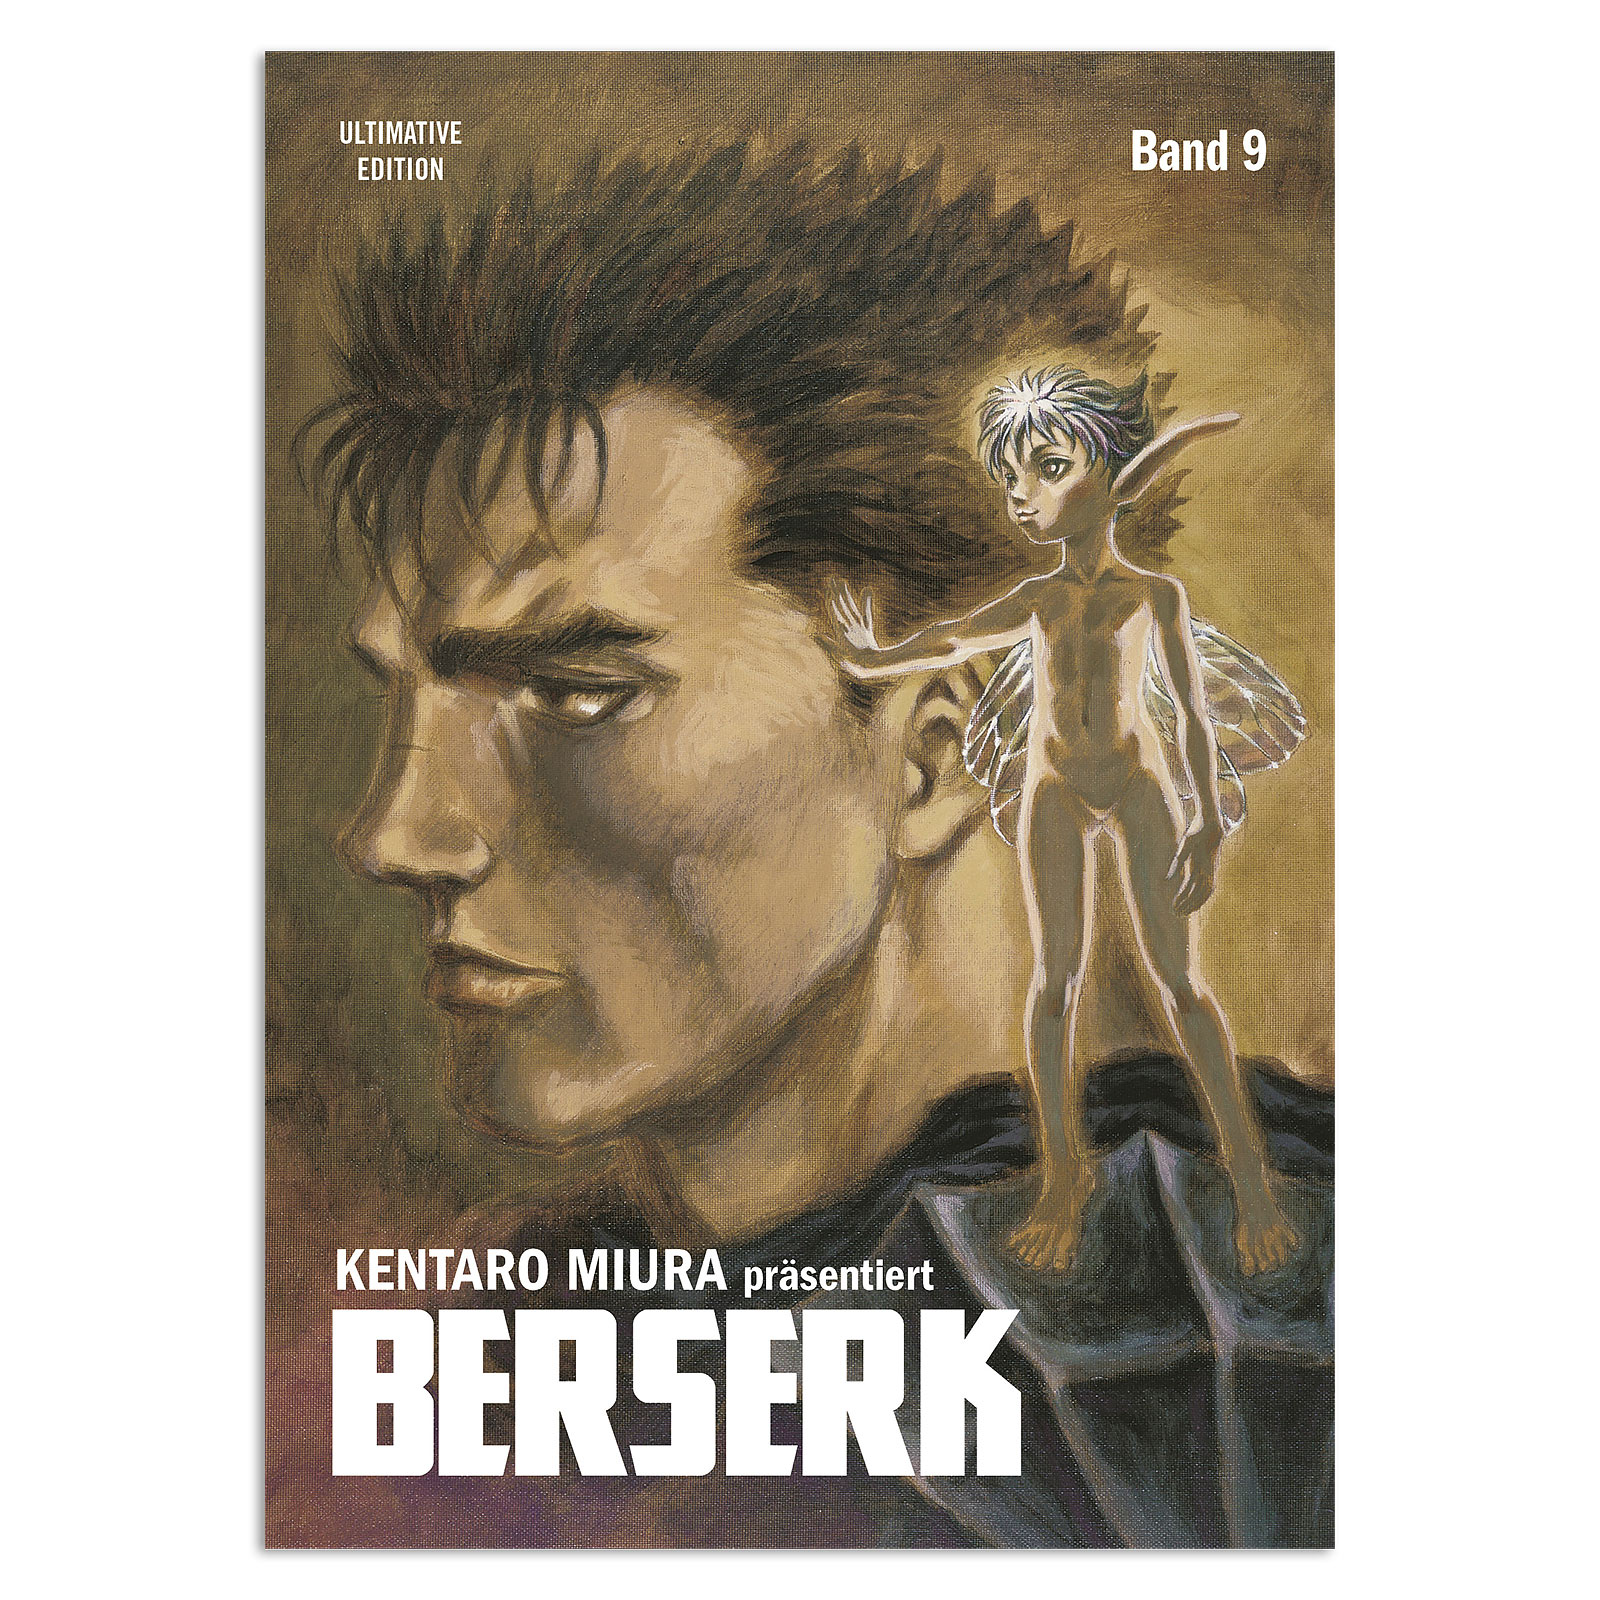 Berserk - Volume 9 Paperback Ultimate Edition